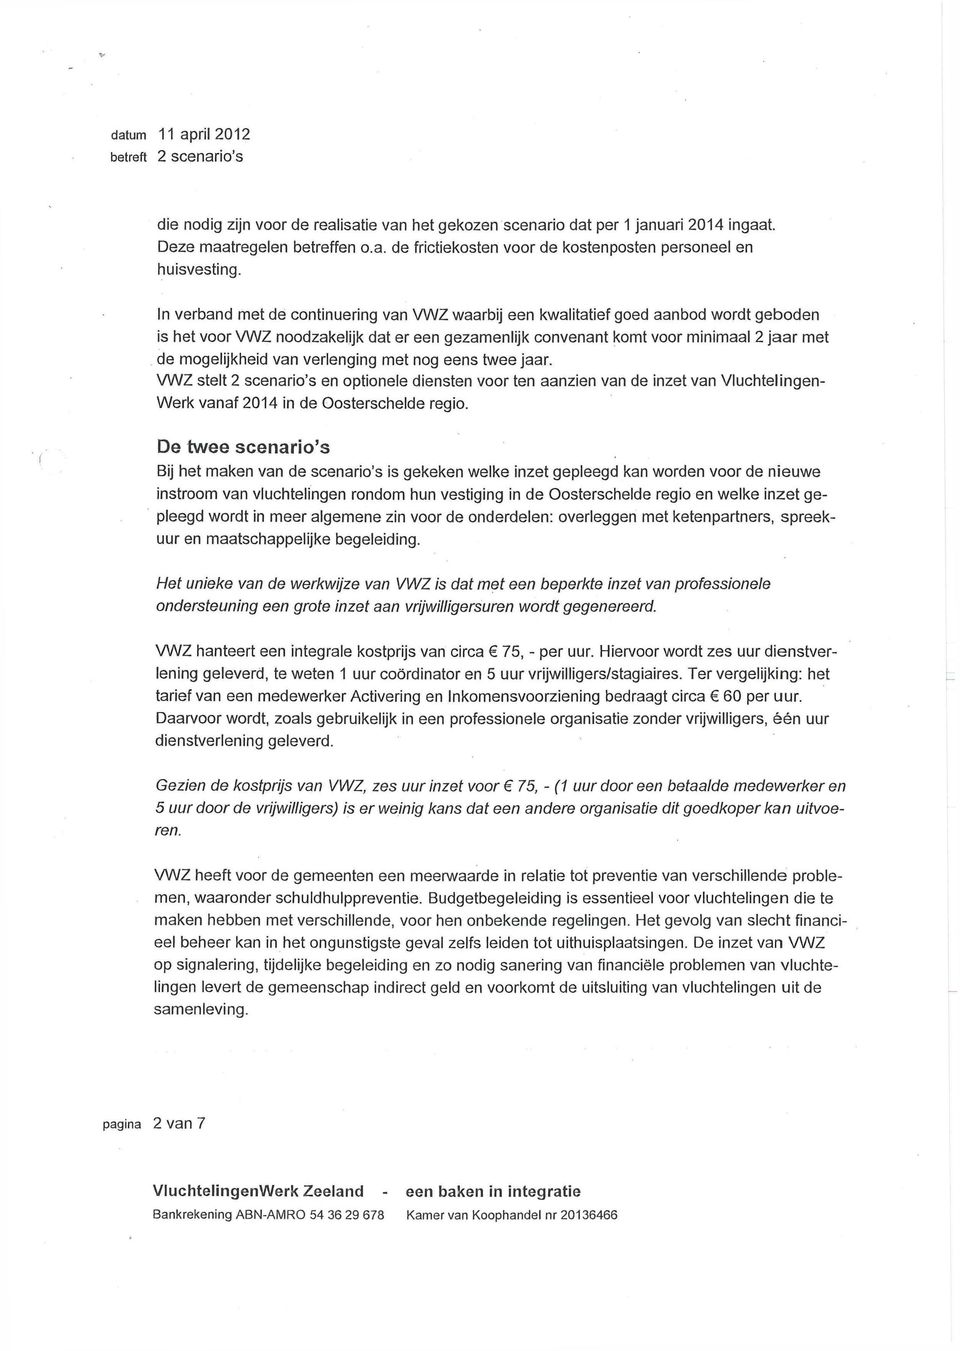 van verlenging met nog eens twee jaar. VWZ stelt 2 scenario's en optionele diensten voor ten aanzien van de inzet van Vluchtelingen- Werk vanaf 2014 in de Oosterschelde regio.